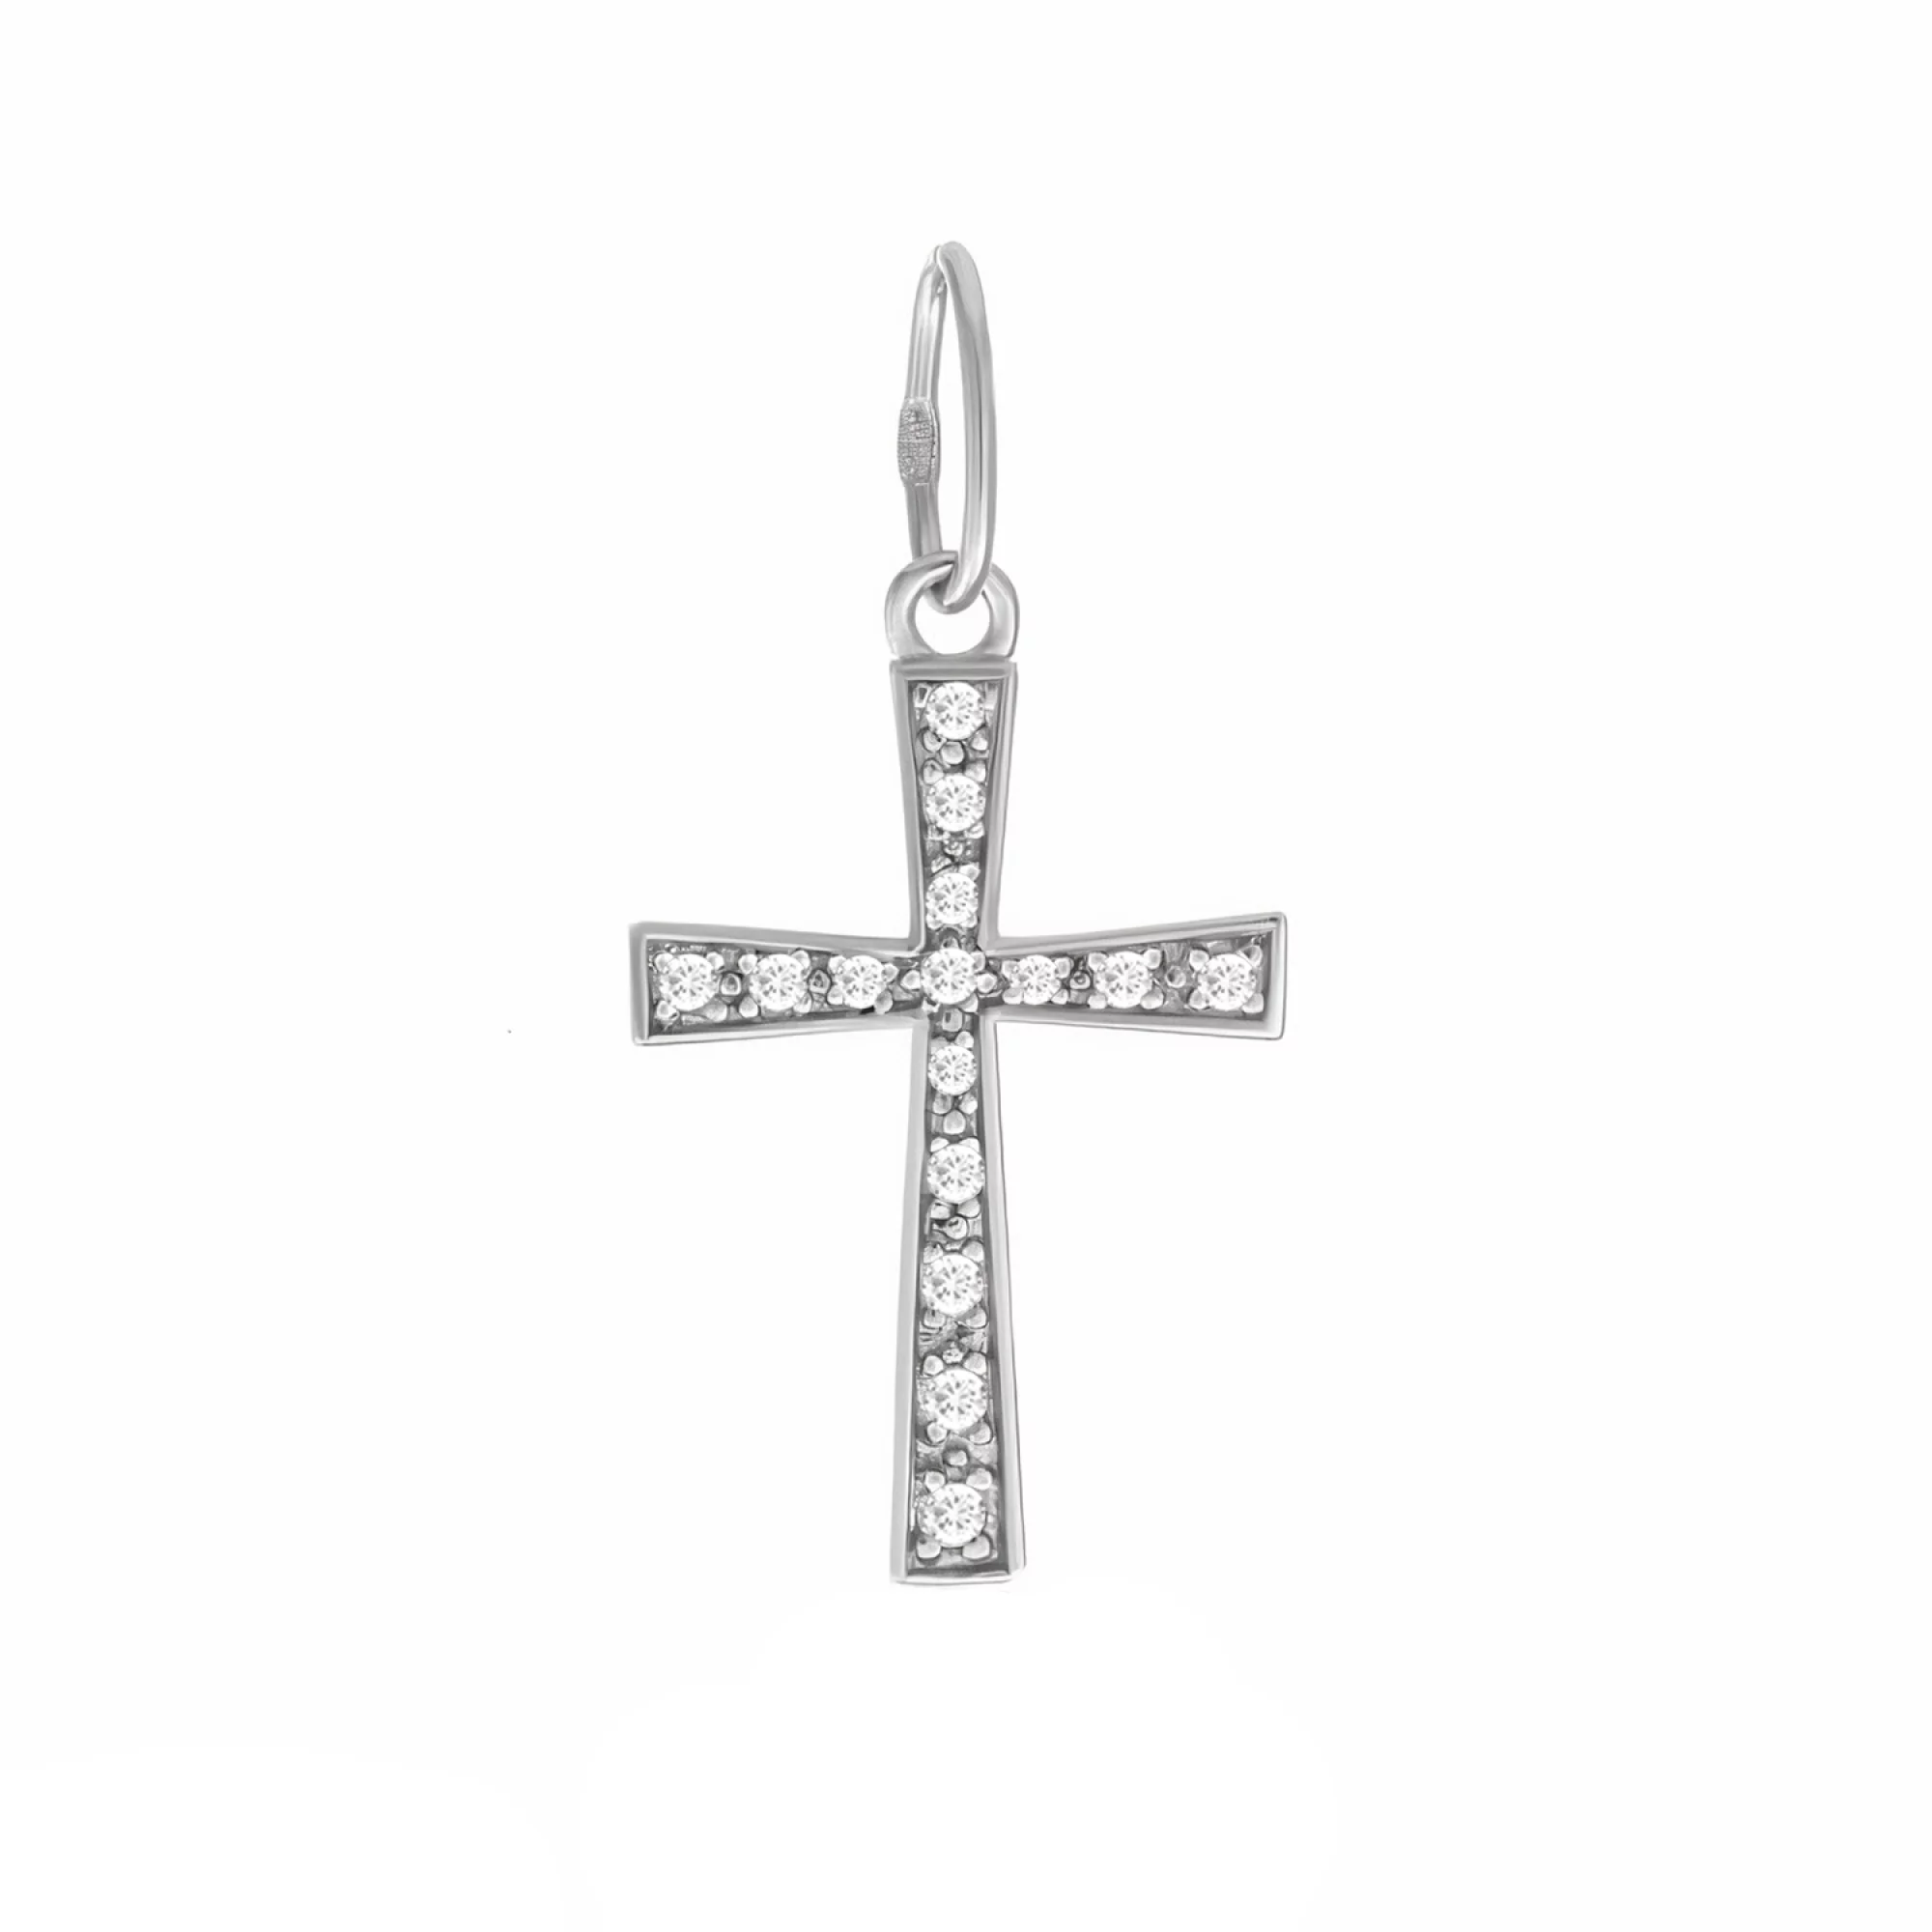 Срібний хрестик з фіанітами - 1517197 – зображення 1